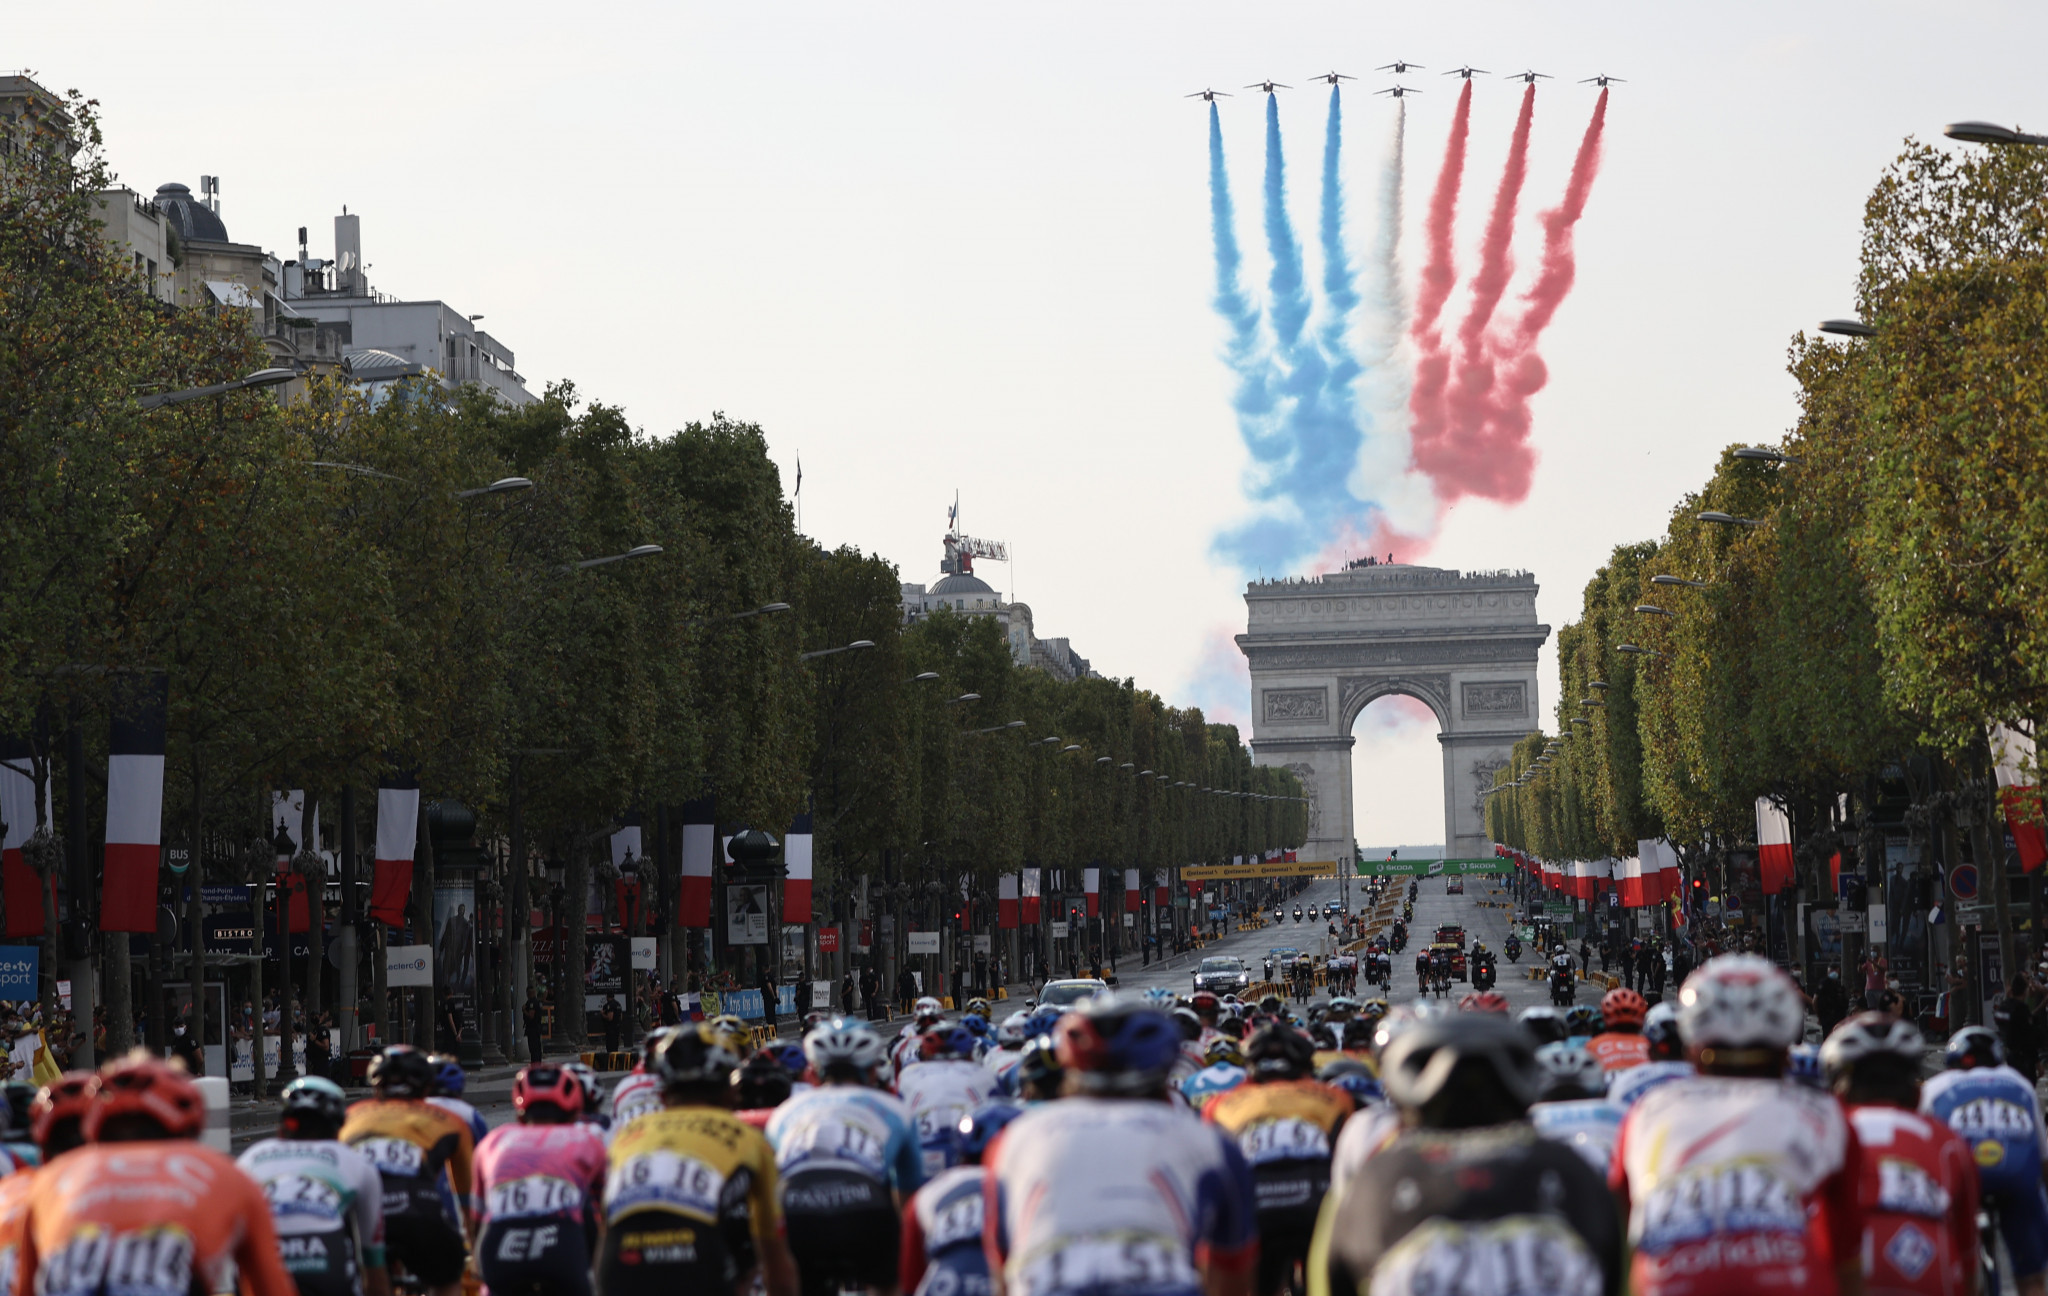 Tour de France finale facing historic move to Nice to avoid Paris 2024 clash